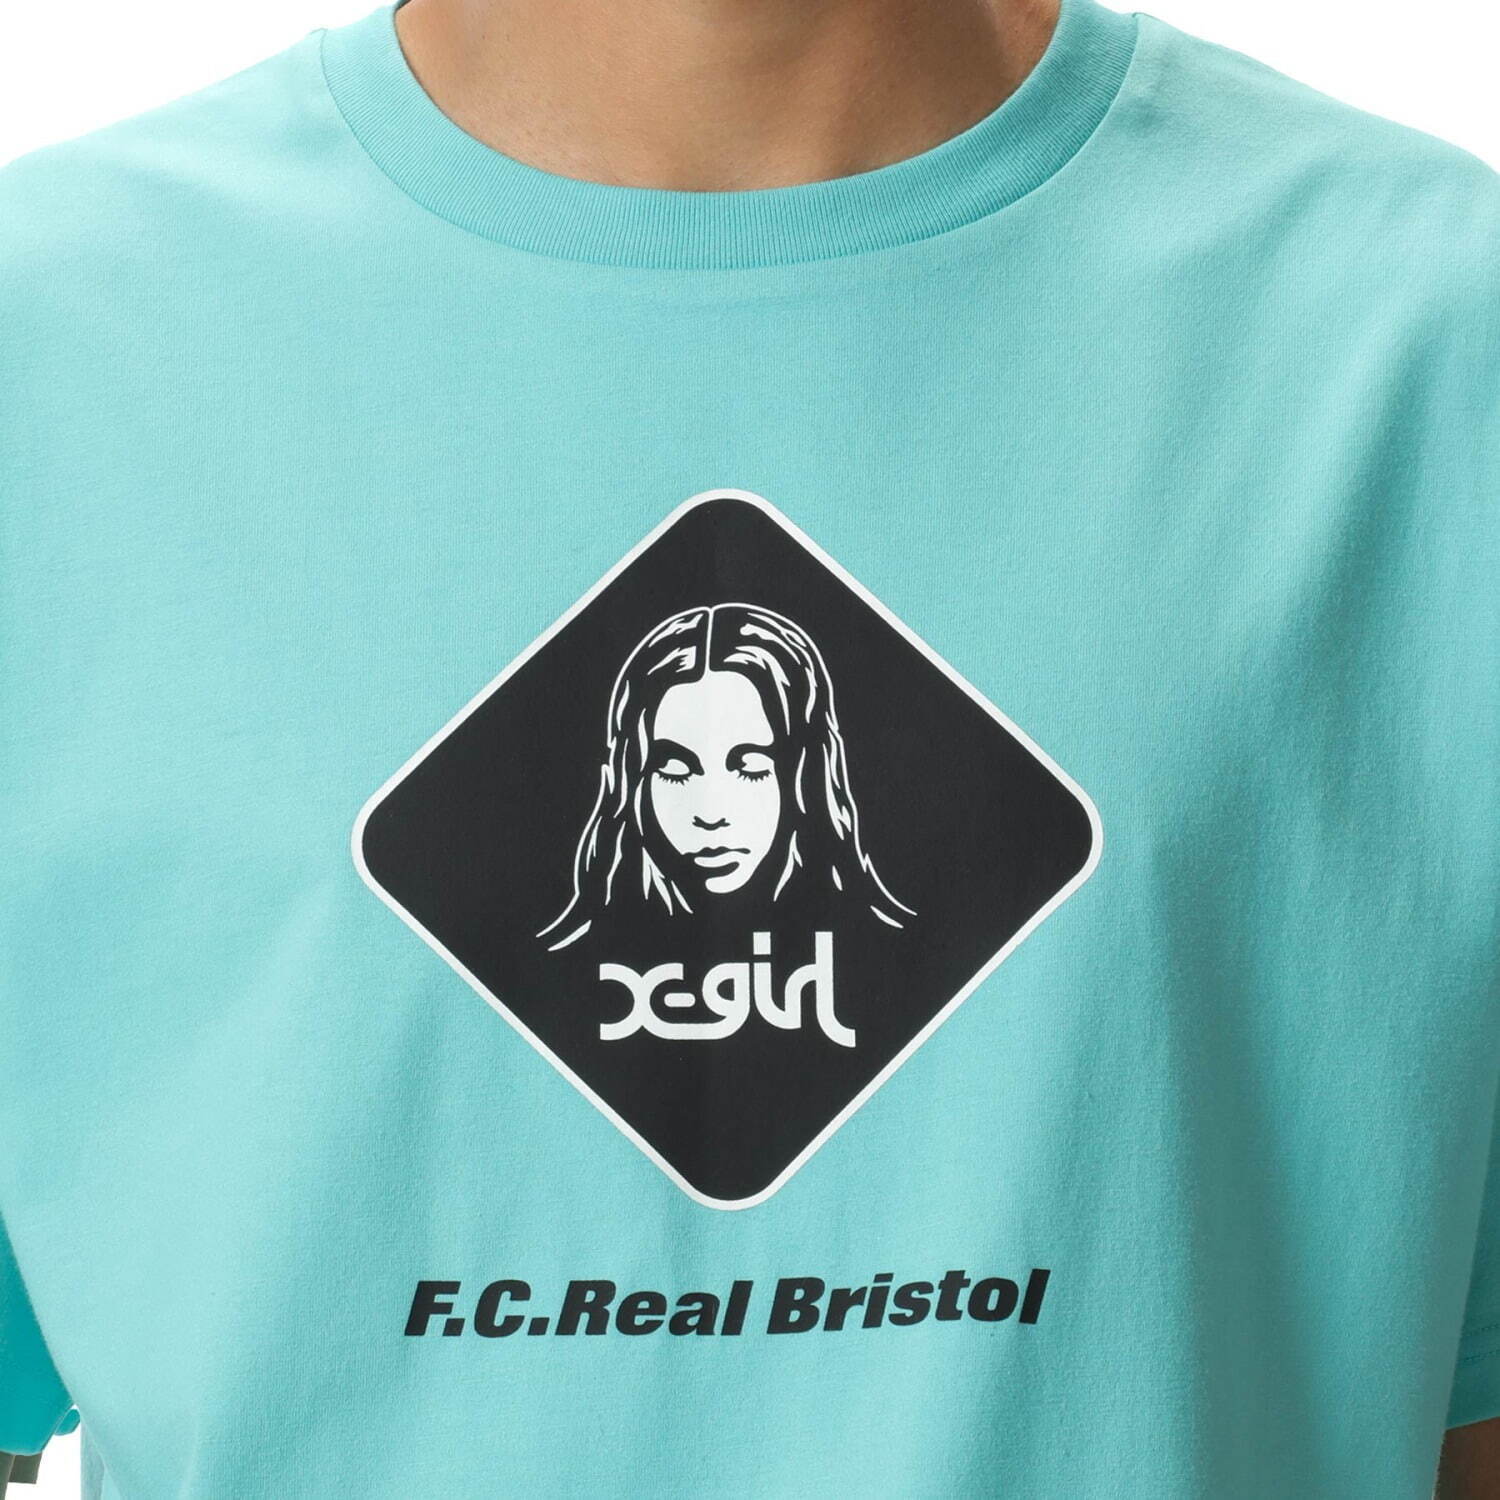 F.C.Real Bristol x-girl コラボ Tシャツ カットソー - Tシャツ